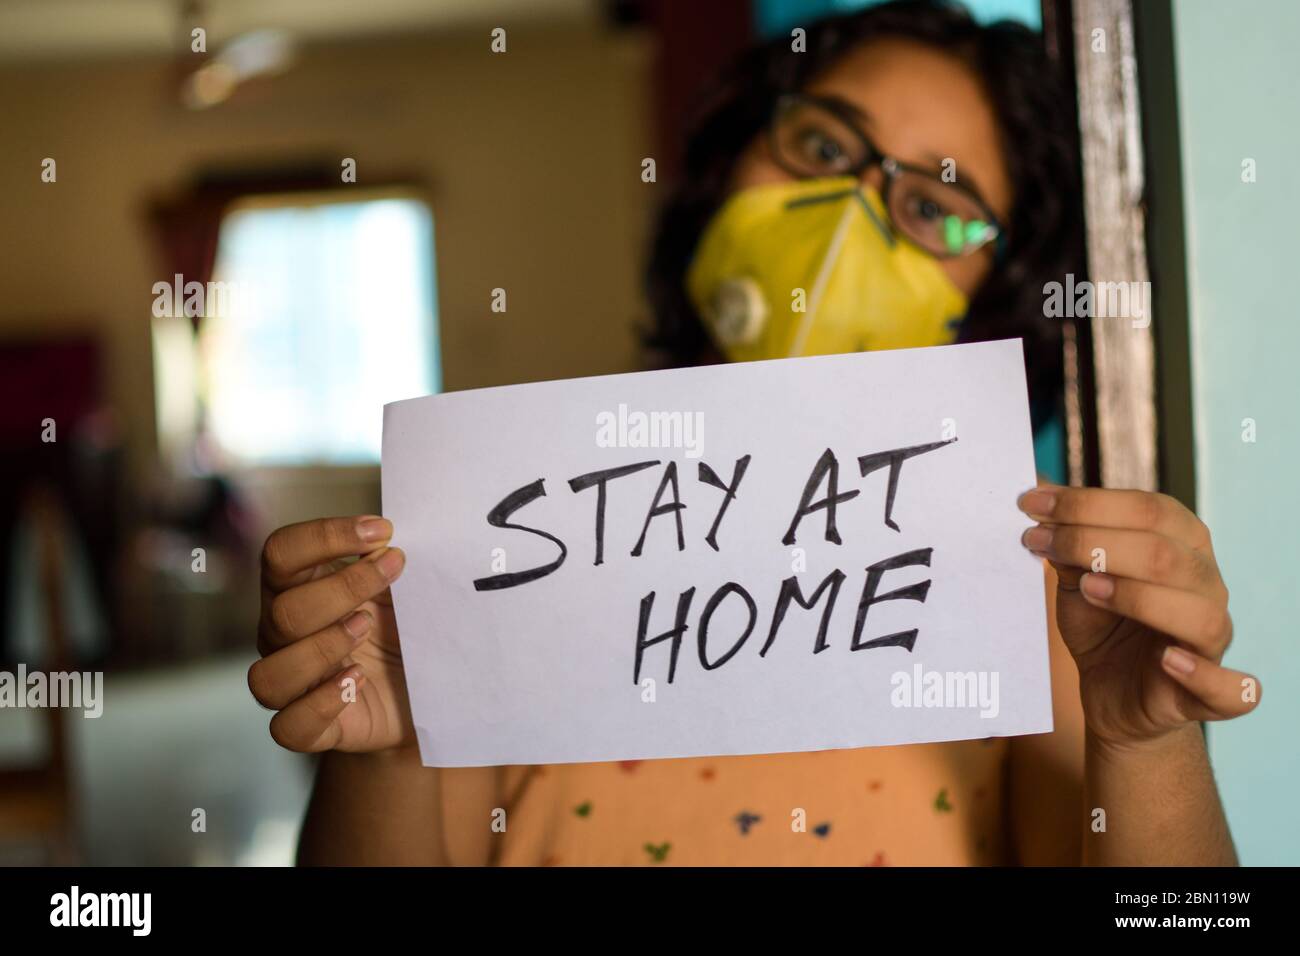 Une petite fille indienne portant un masque tient une affiche entre les mains montrant un message « Tay at Home » pendant la pandémie COVID-19 pour maintenir la distance sociale. Banque D'Images